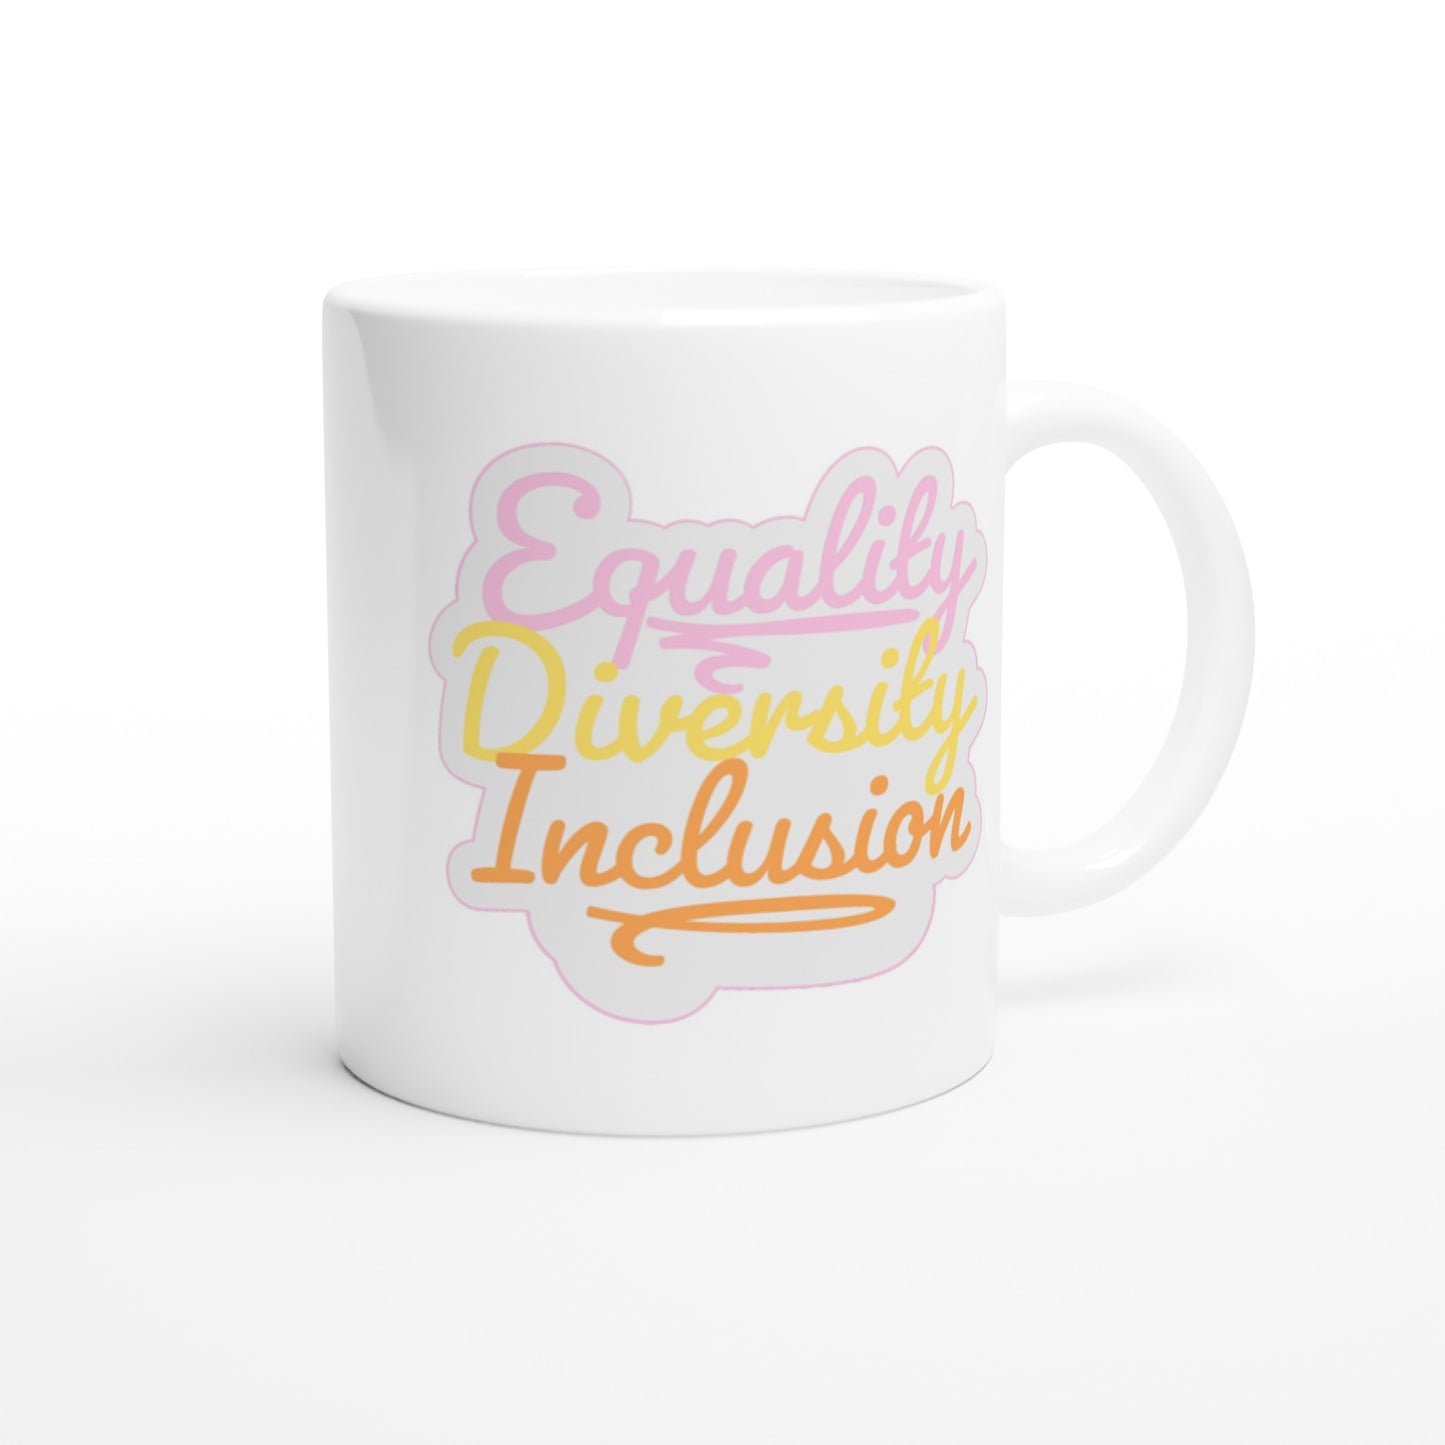 Inclusive | Equality Diversity Inclusion | 11oz Ceramic Mug